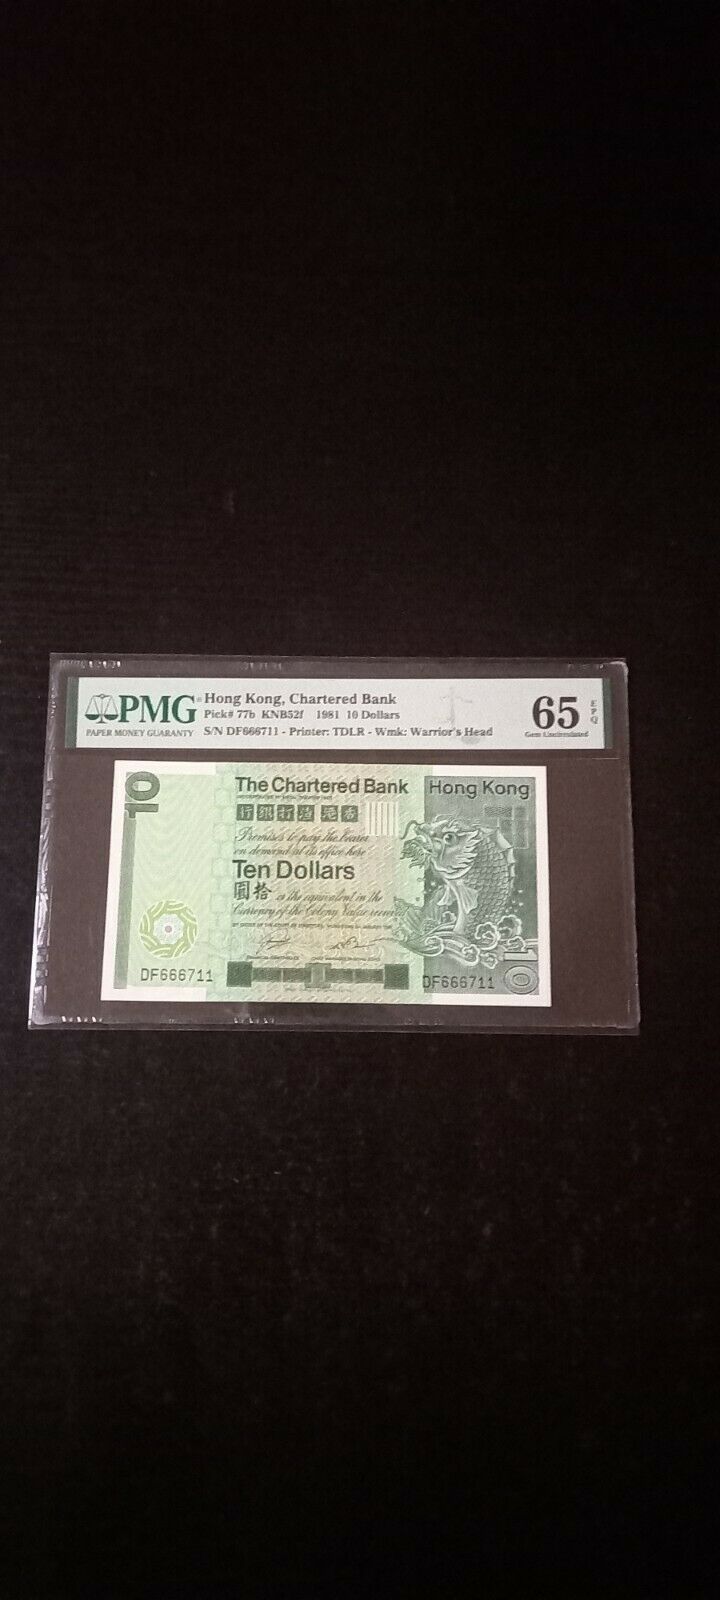 Hong Kong Chartered Bank 1981 $10, Pmg 65